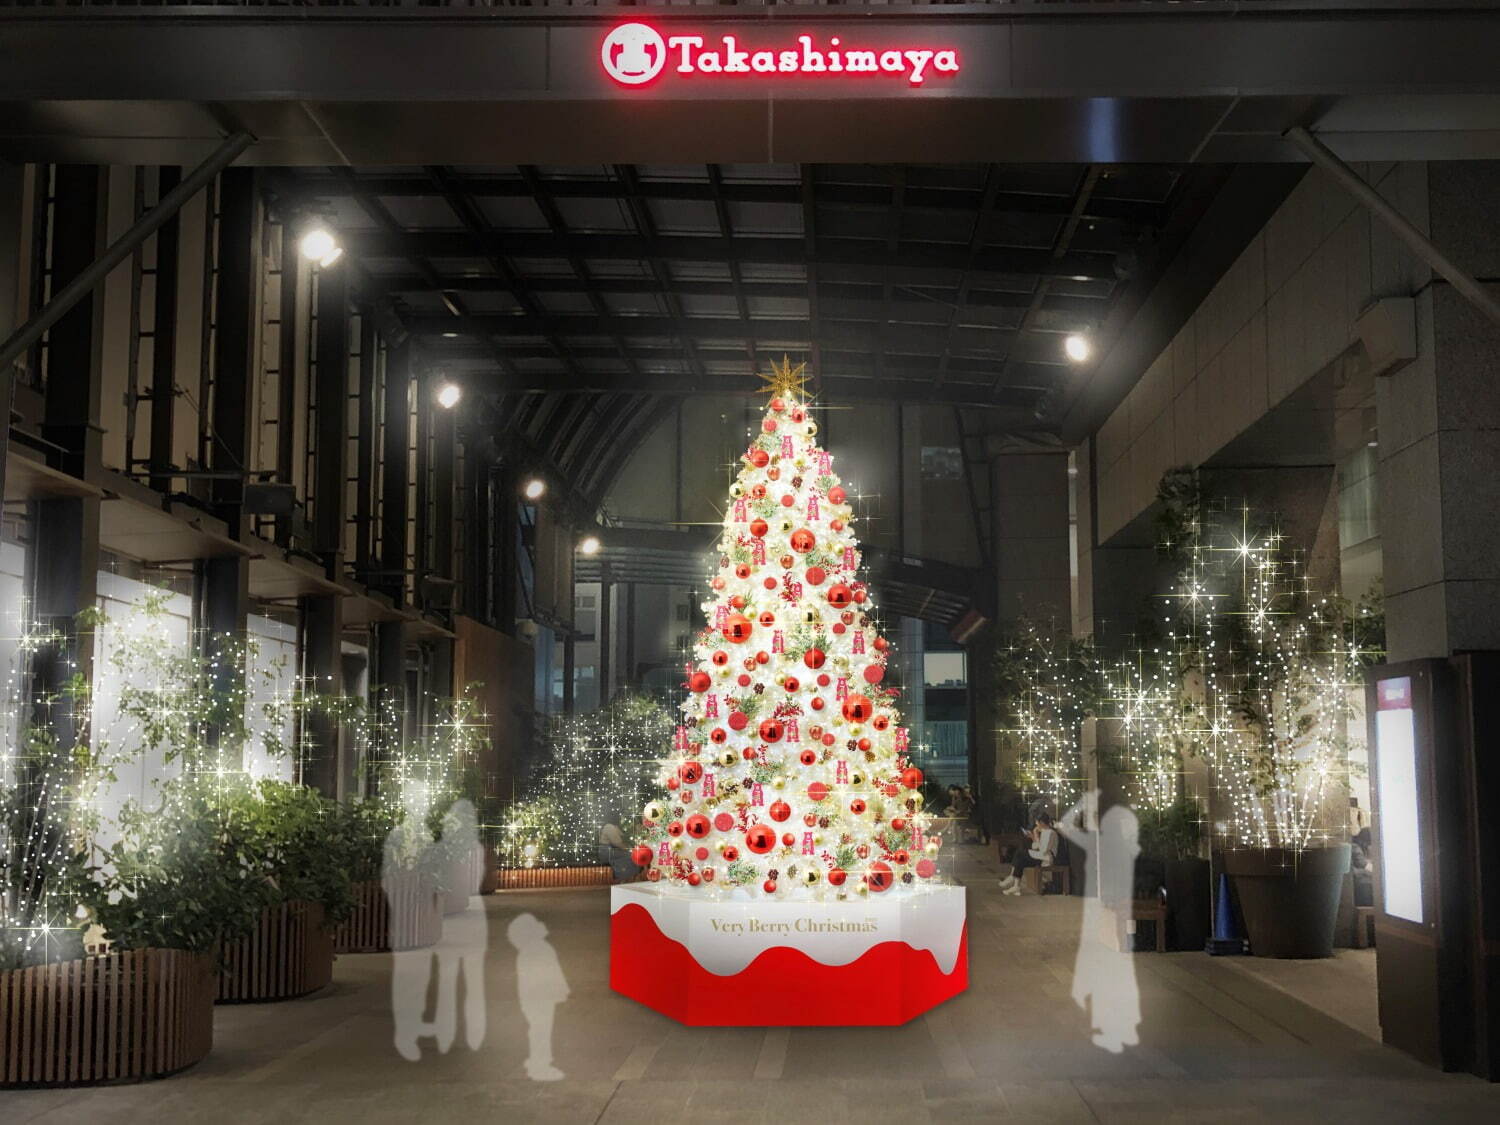 タカシマヤ タイムズスクエア
※ツリーは2022年12月25日(日)まで(予定)。
※写真はイメージ。